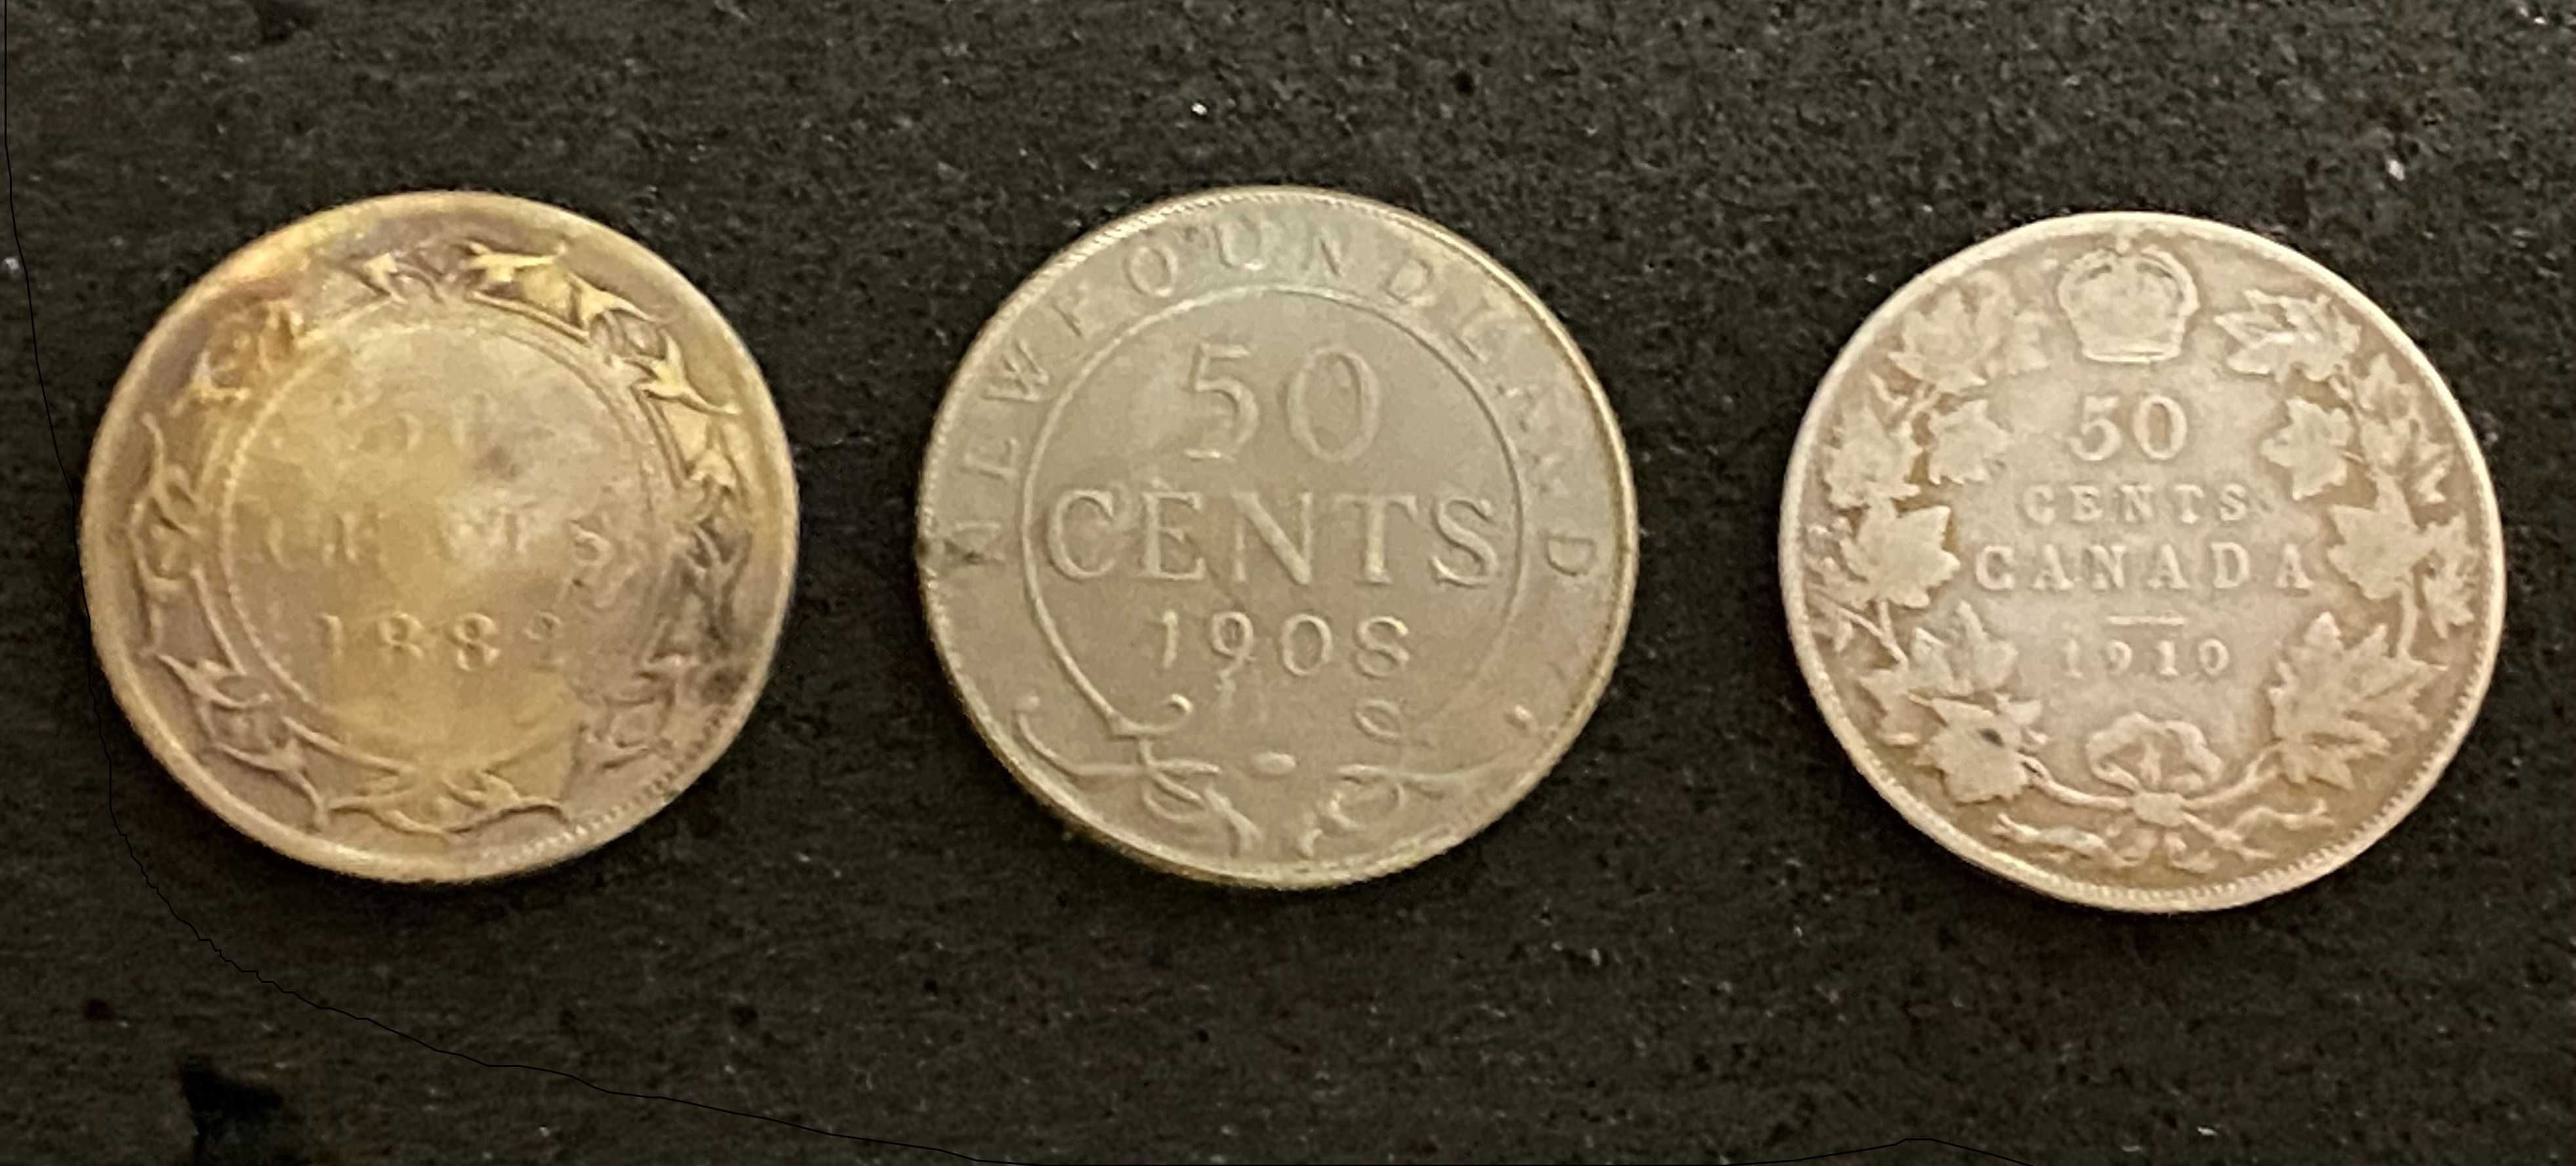 Kanada  1910   50 centow   srebro    Unikat